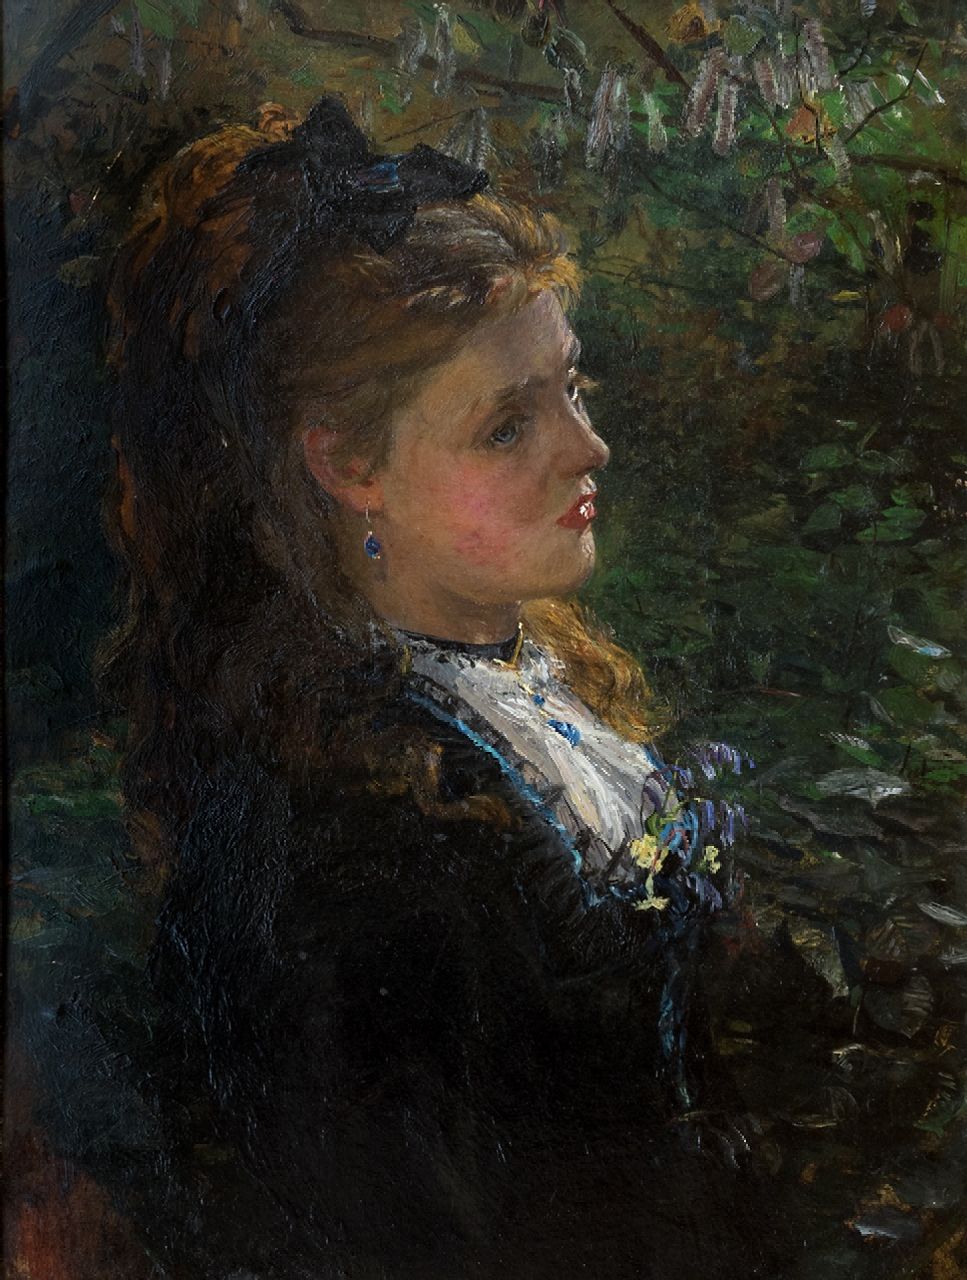 James Carroll Beckwith | Portret van een jonge vrouw onder de bomen, mogelijk de jonge Lilly Langtry (21 jaar), olieverf op board, 40,0 x 30,0 cm